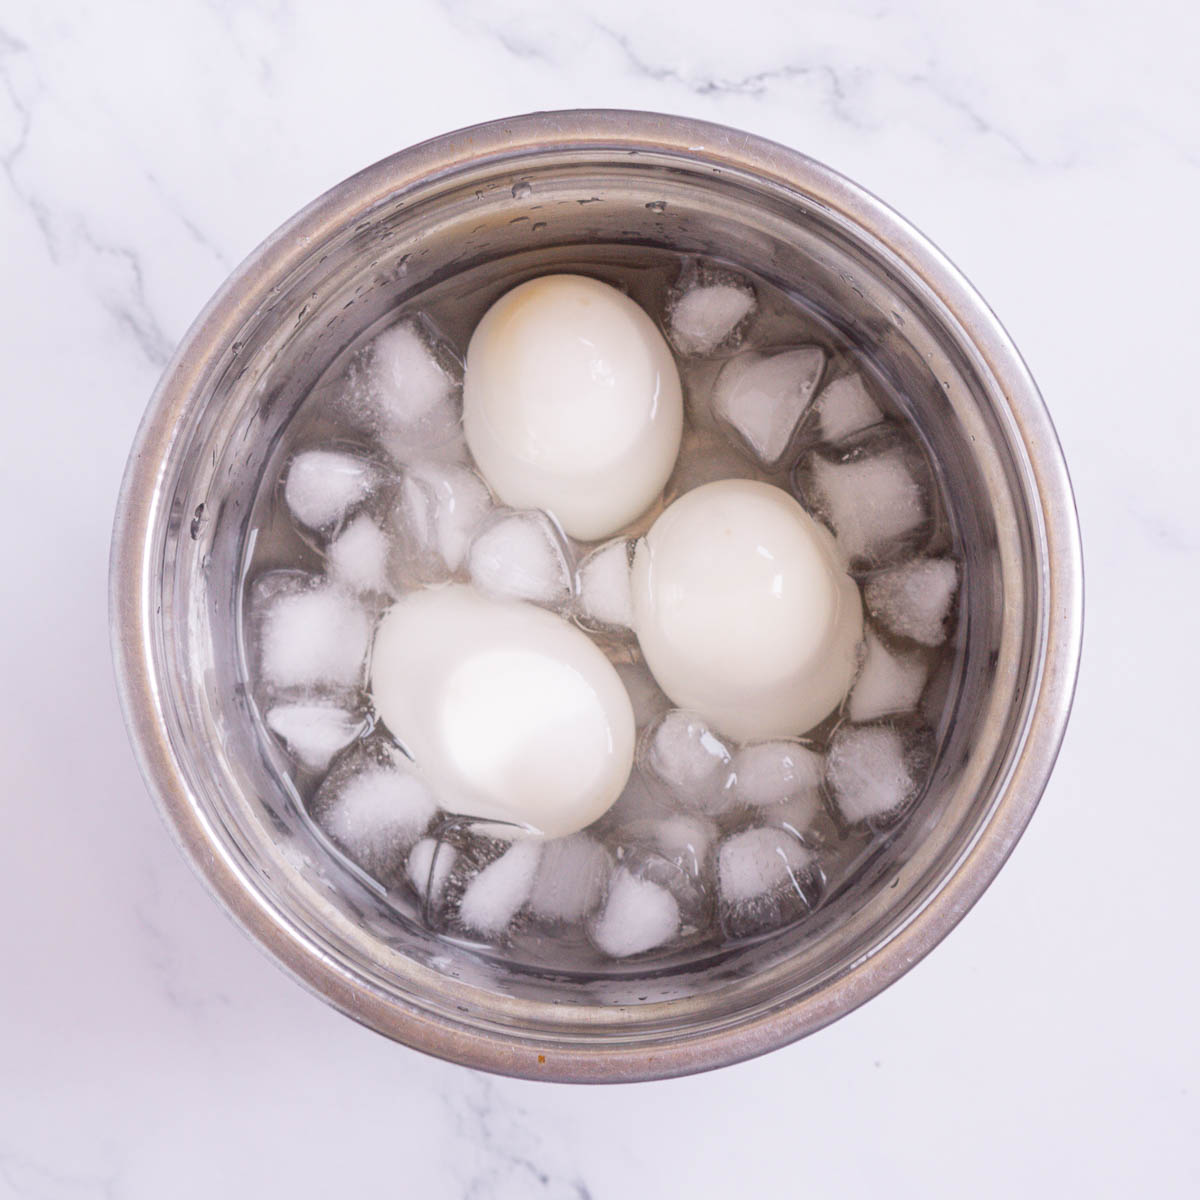 Duck eggs in an ice bath